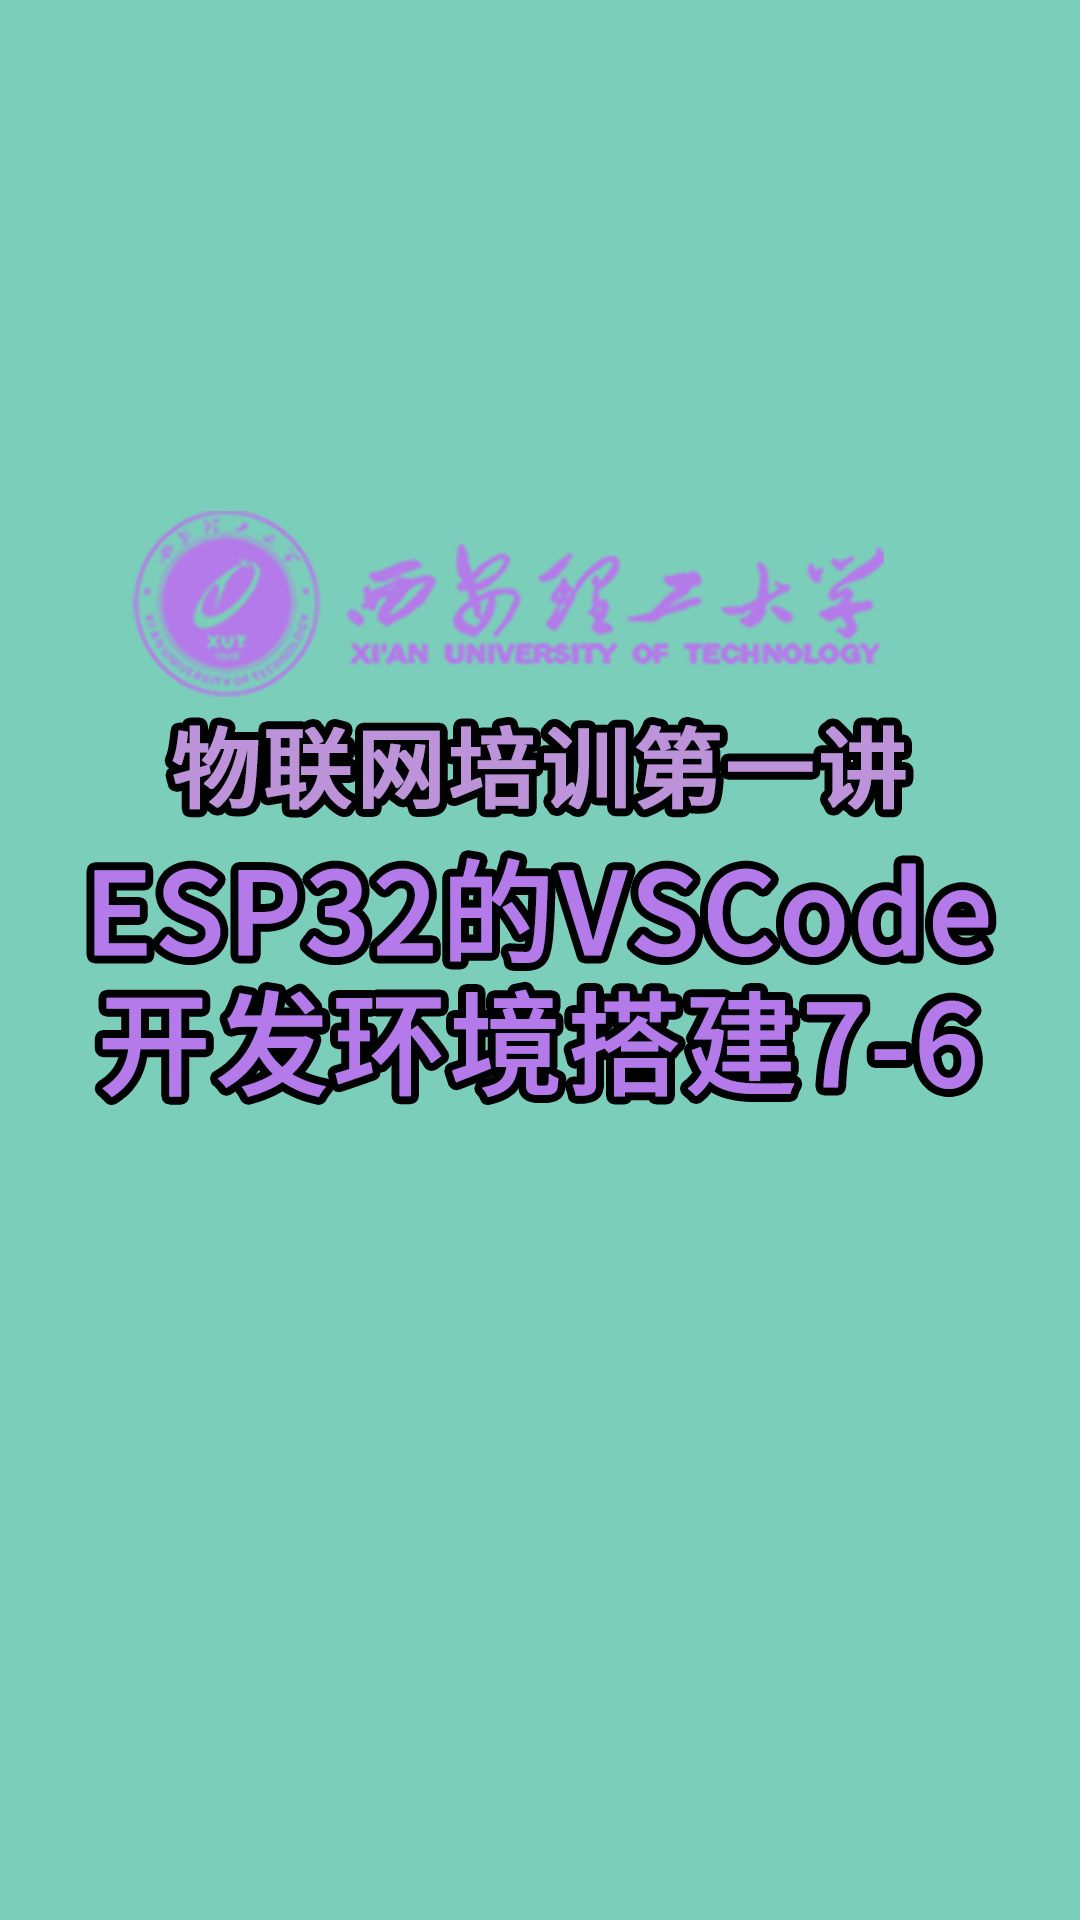 西安理工大学-物联网培训第一讲-ESP32的VSCode开发环境搭建7-6#物联网 